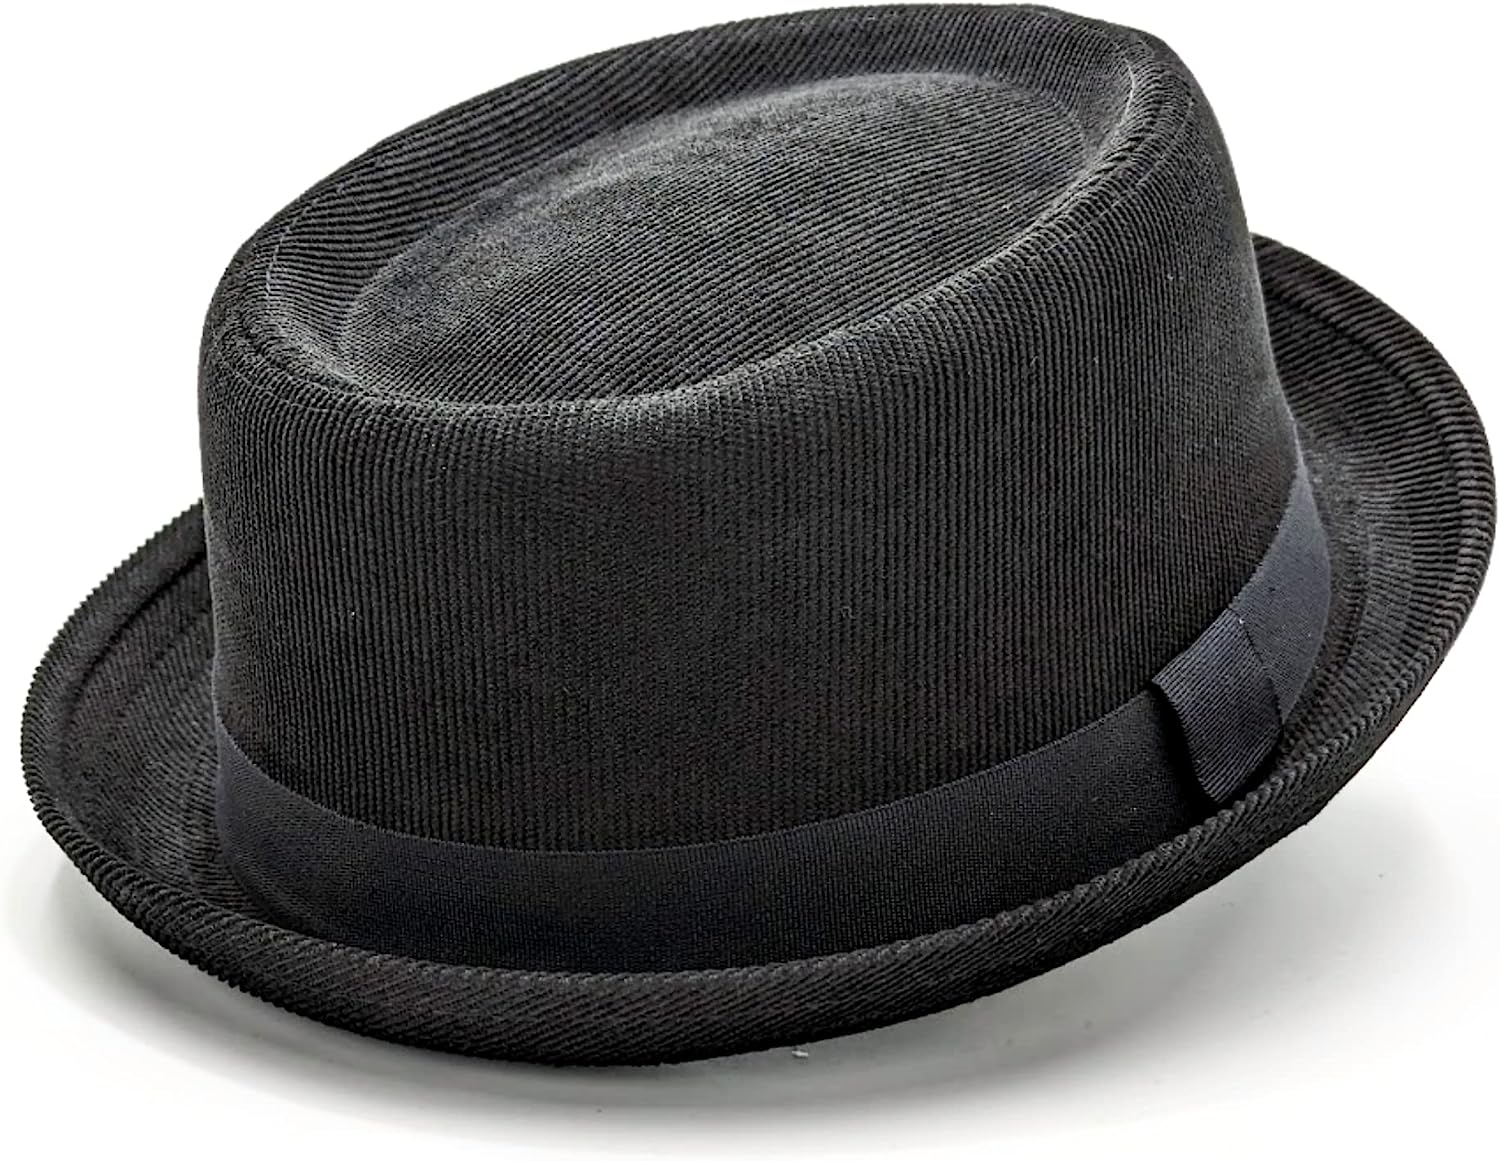 Sterzeal Black Corduroy Pork Pie hat Trilby hat for Men Unisex Short Brim hat Gents Jazz hat Fedora hat Porkpie Cotton